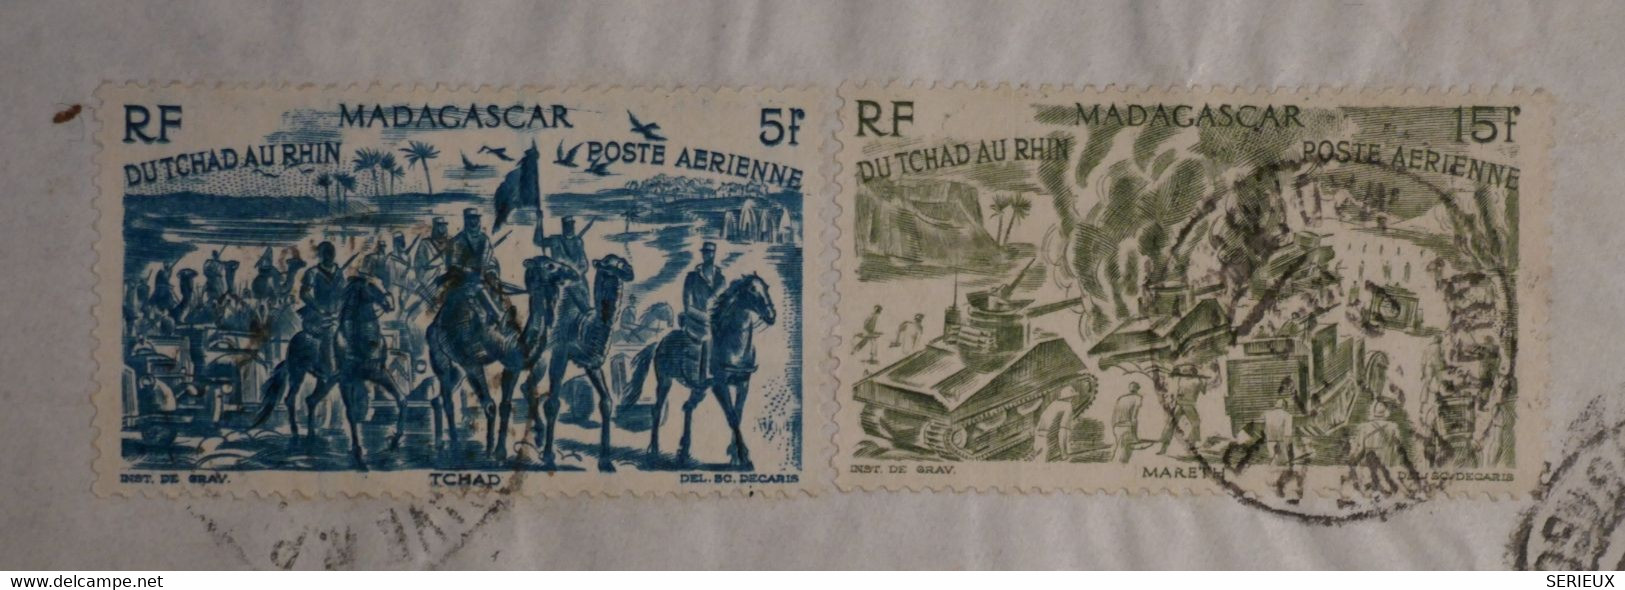 AP7 MADAGASCAR   BELLE LETTRE 1959 PAR AVIONB  POUR RIBERAC   FRANCE  +N°68 + +AFFRANCH.INTERESSANT - Luftpost